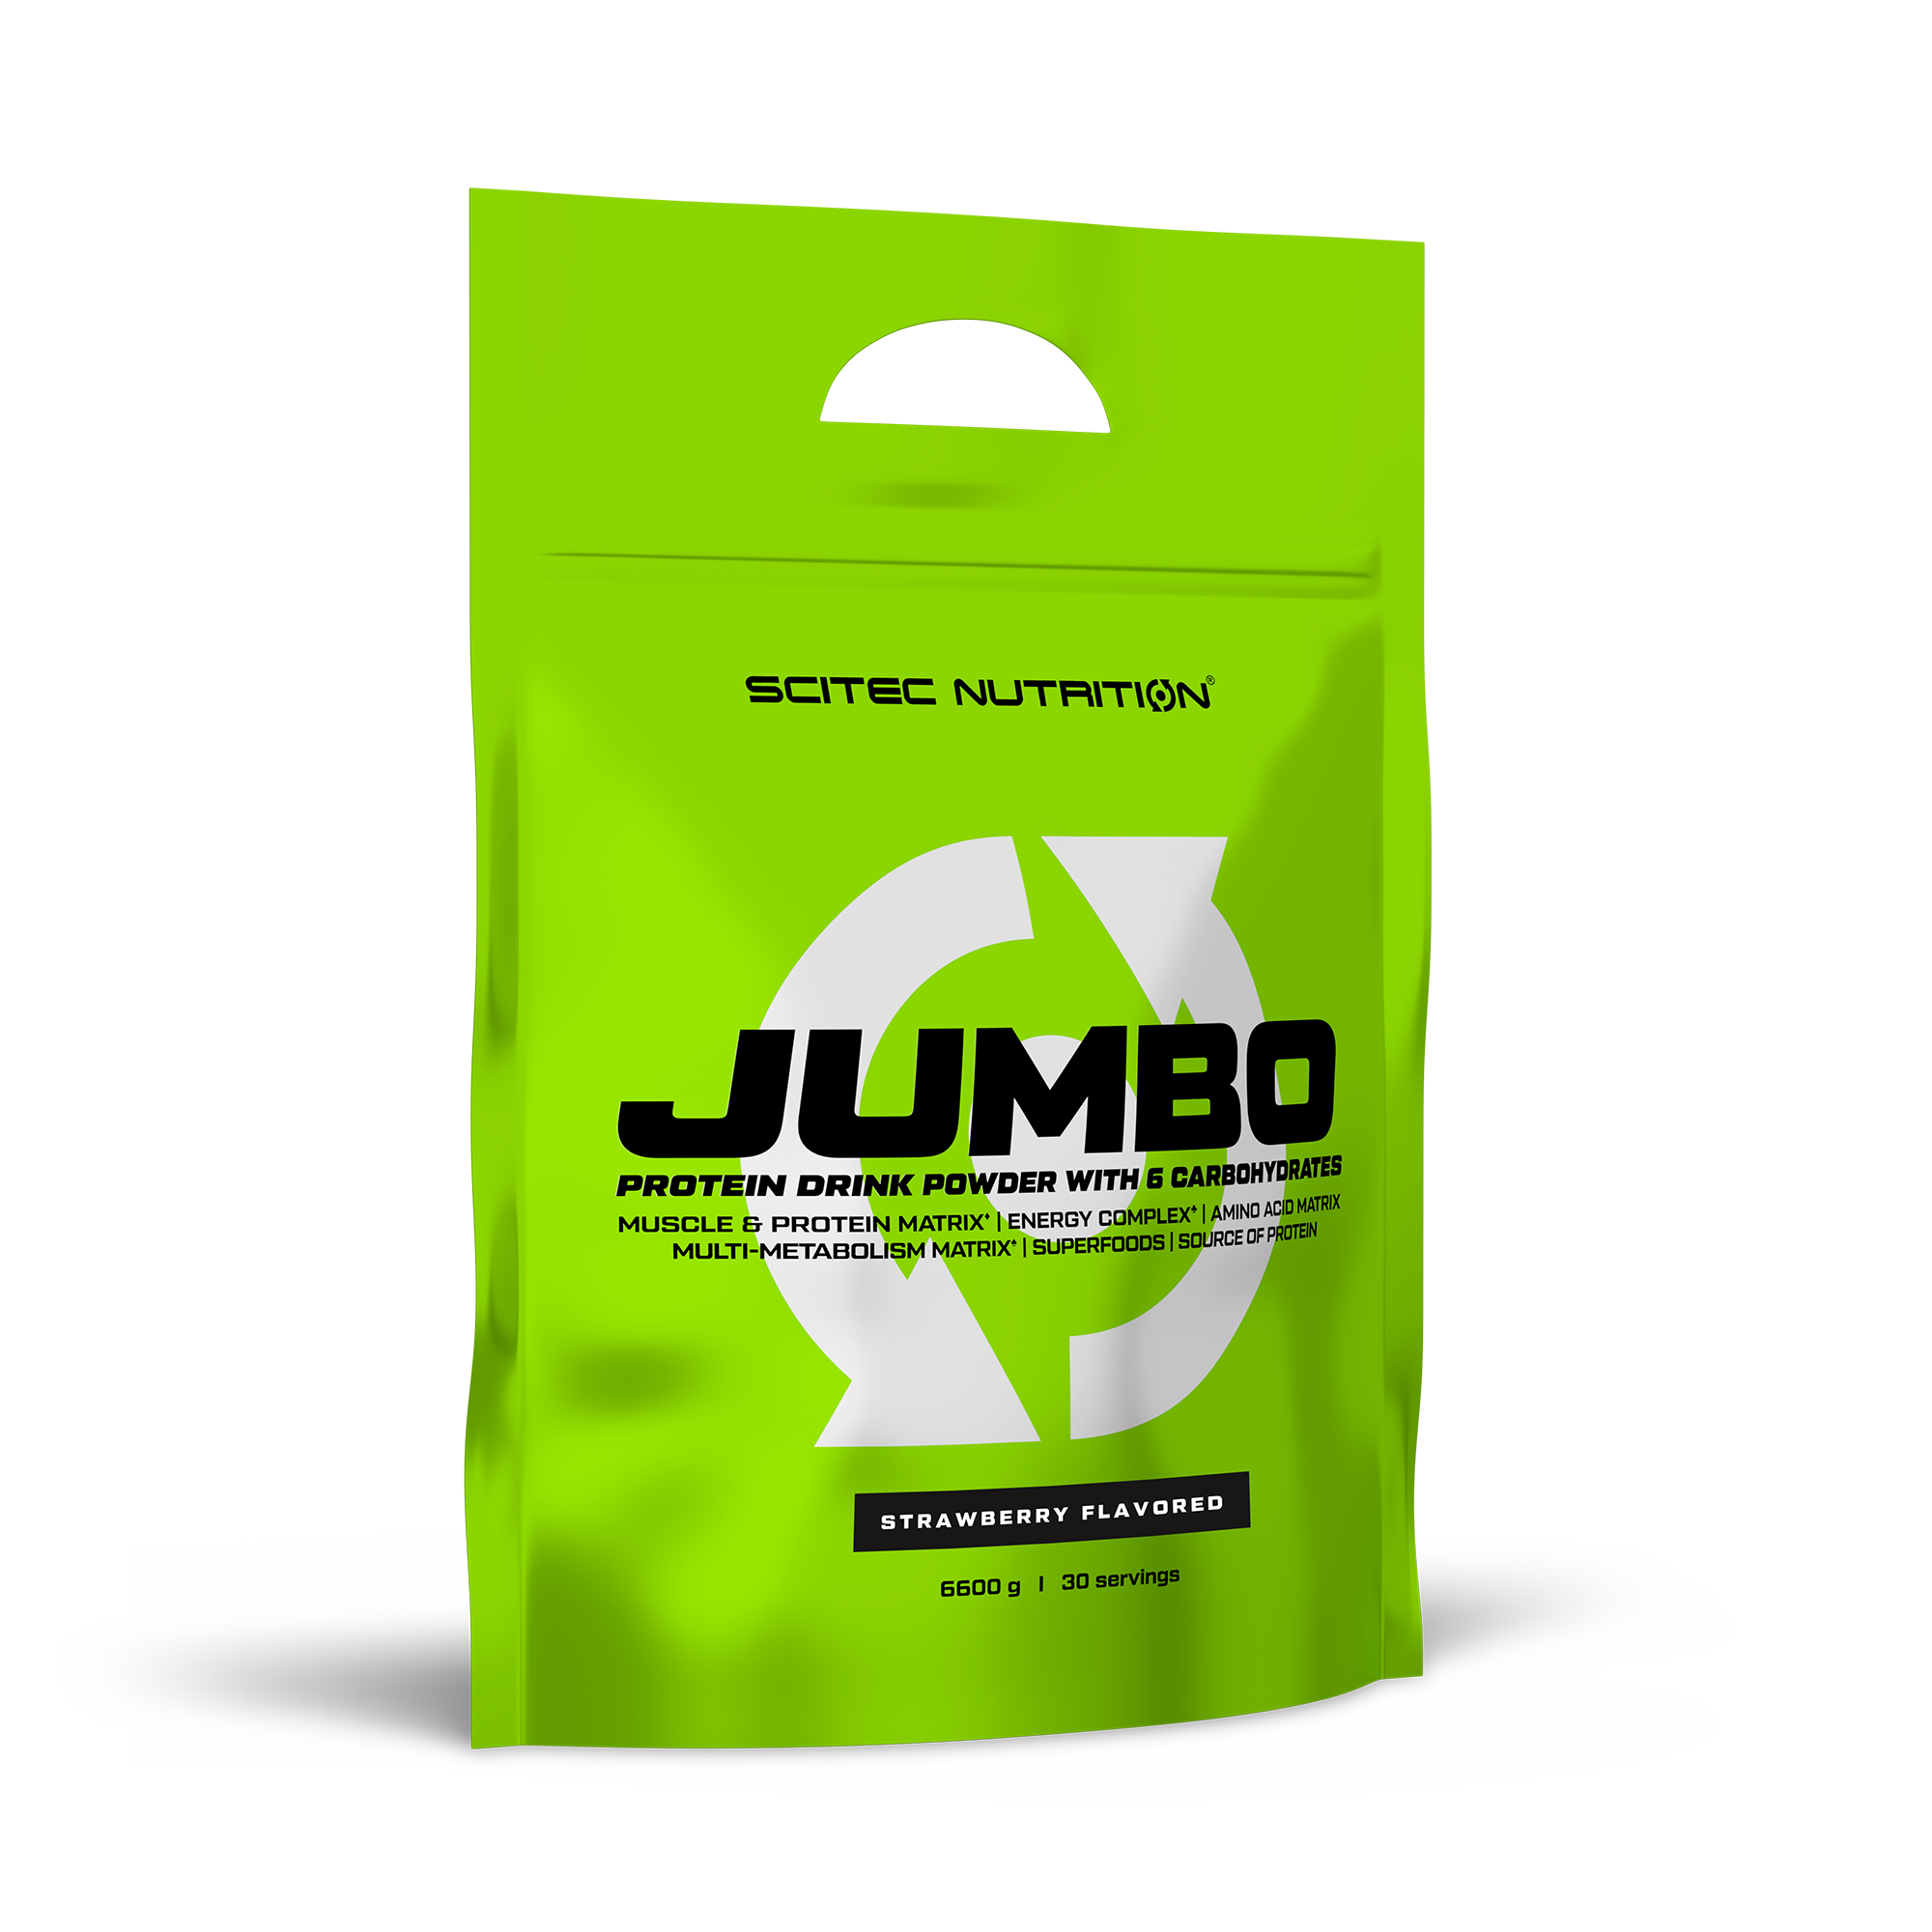 Гейнер Scitec Nutrition Jumbo 6600 гр., клубника